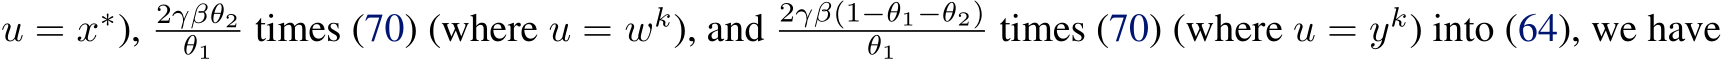 u = x∗), 2γβθ2θ1 times (70) (where u = wk), and 2γβ(1−θ1−θ2)θ1 times (70) (where u = yk) into (64), we have